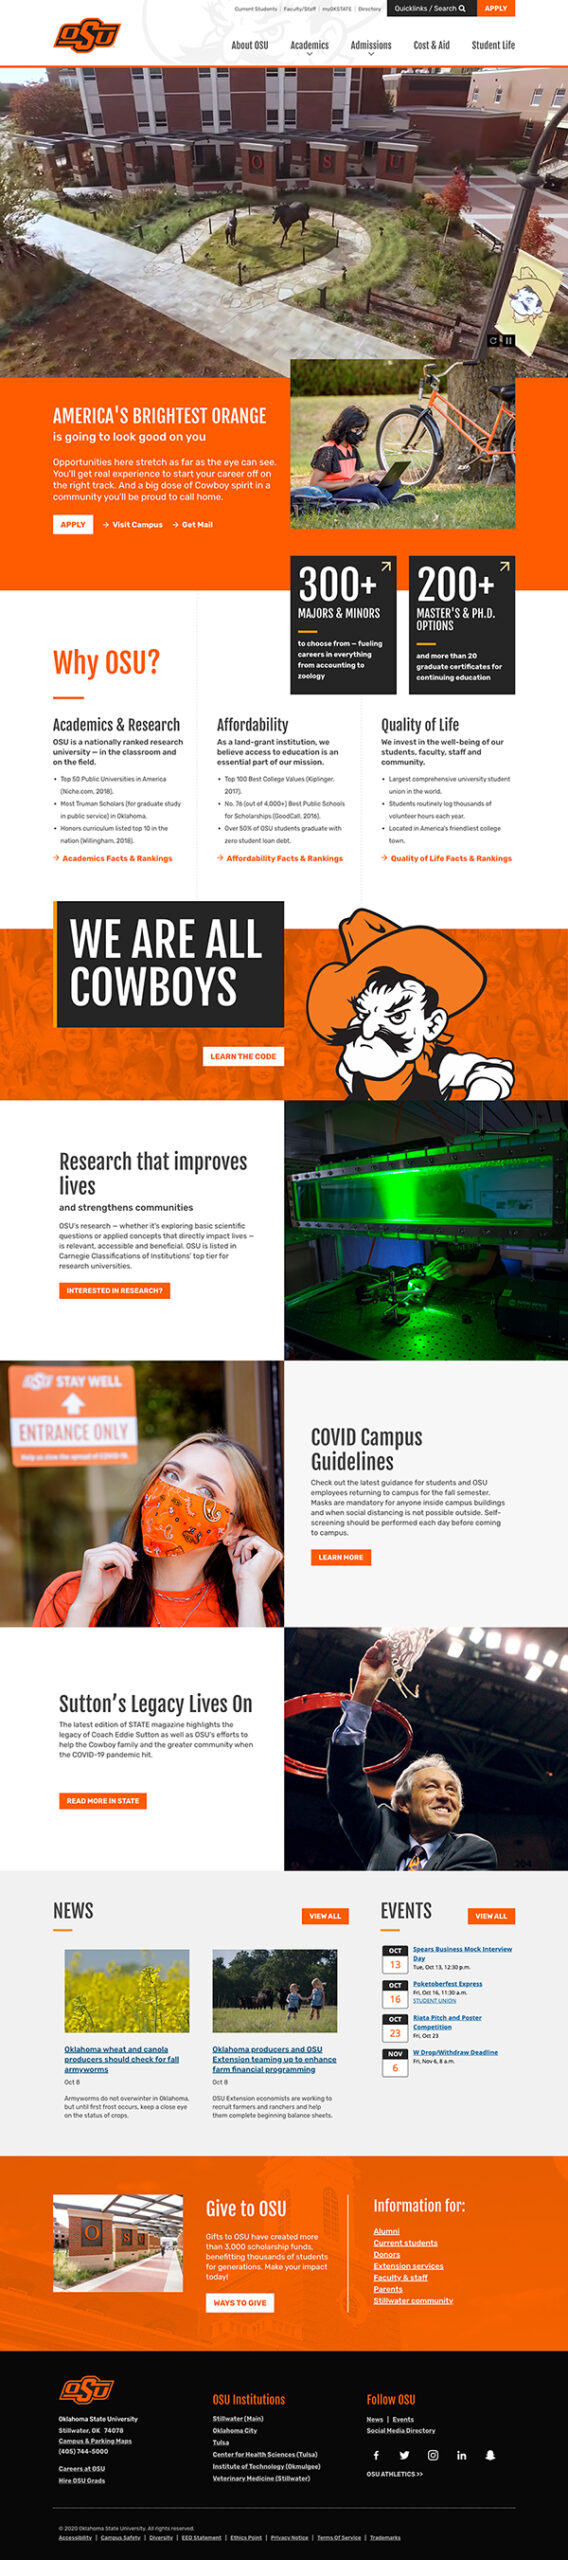 Screencapture of the OSU home page